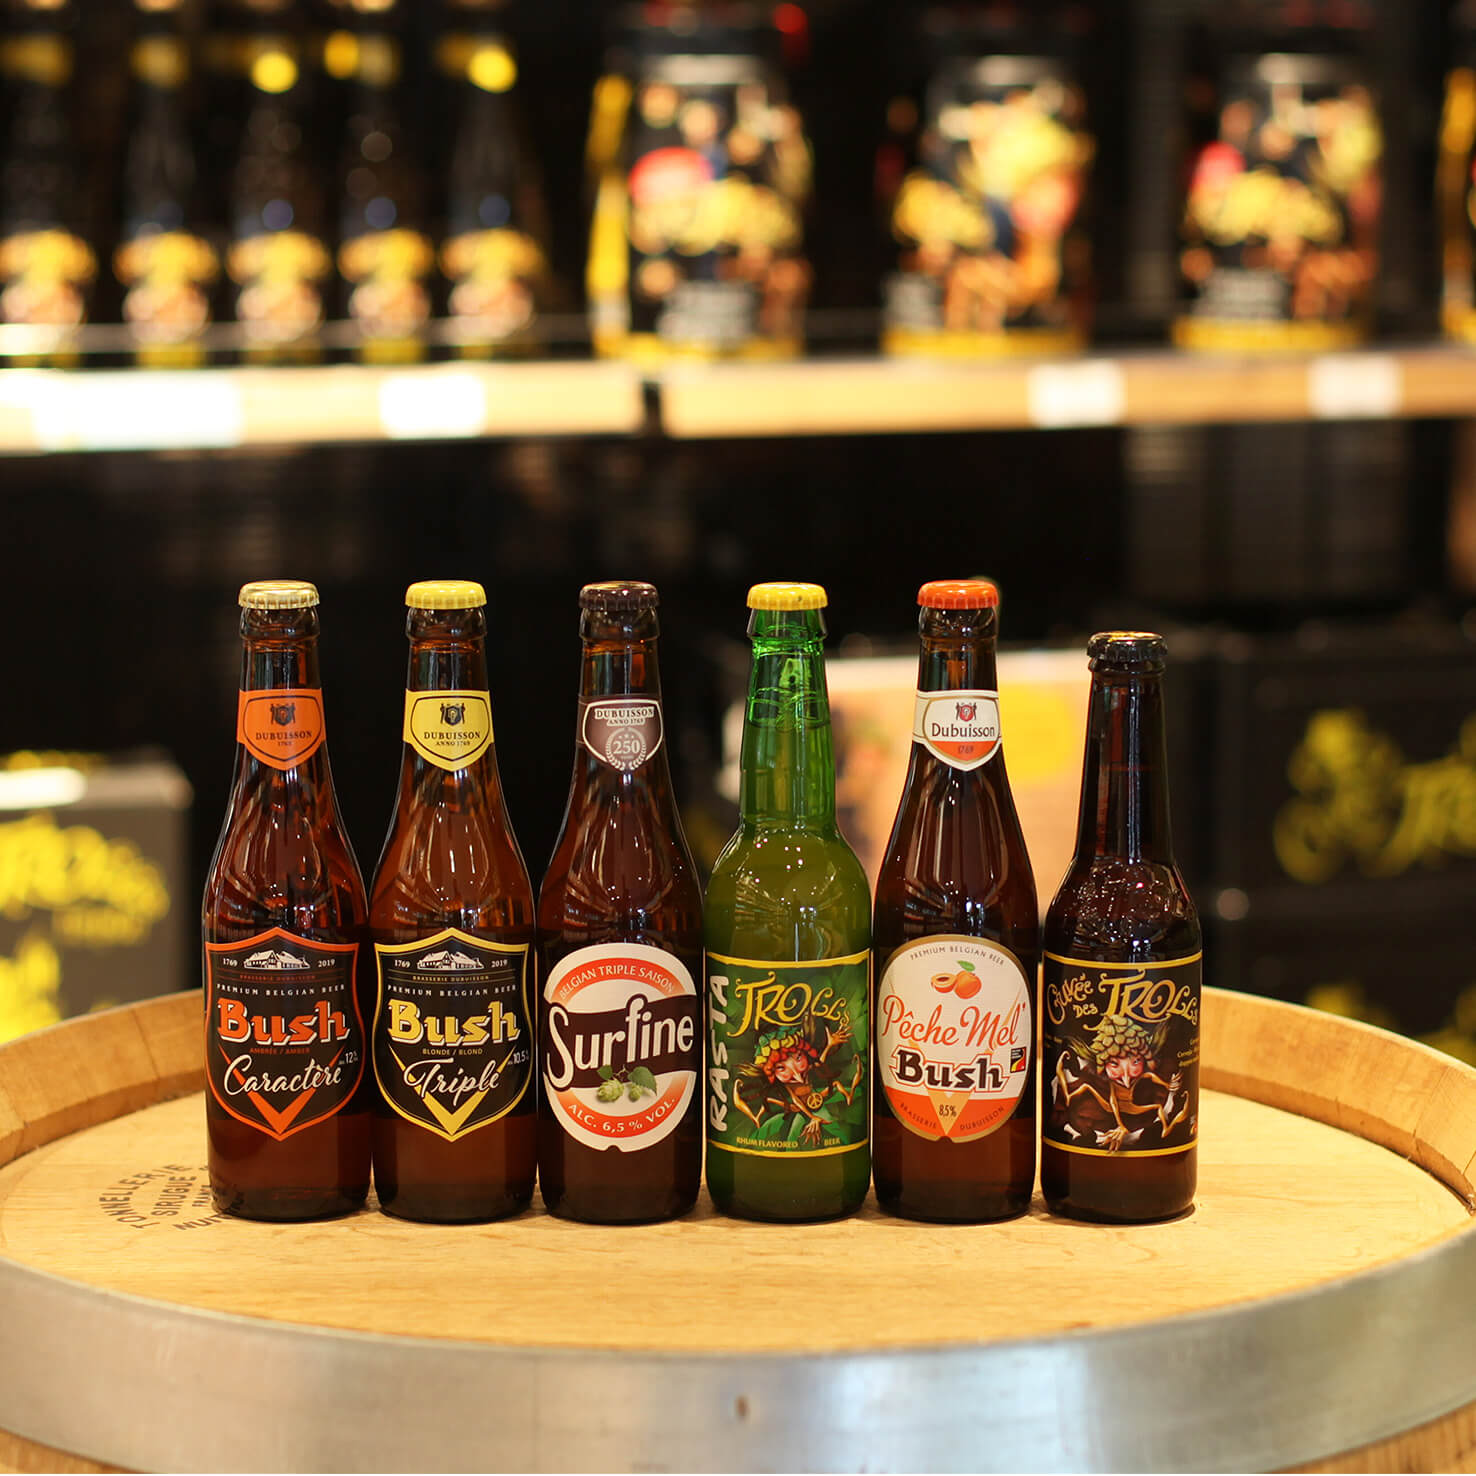 Pack de 6 bières de Belgique Cuvée des Trolls Blonde 6 x 25cl